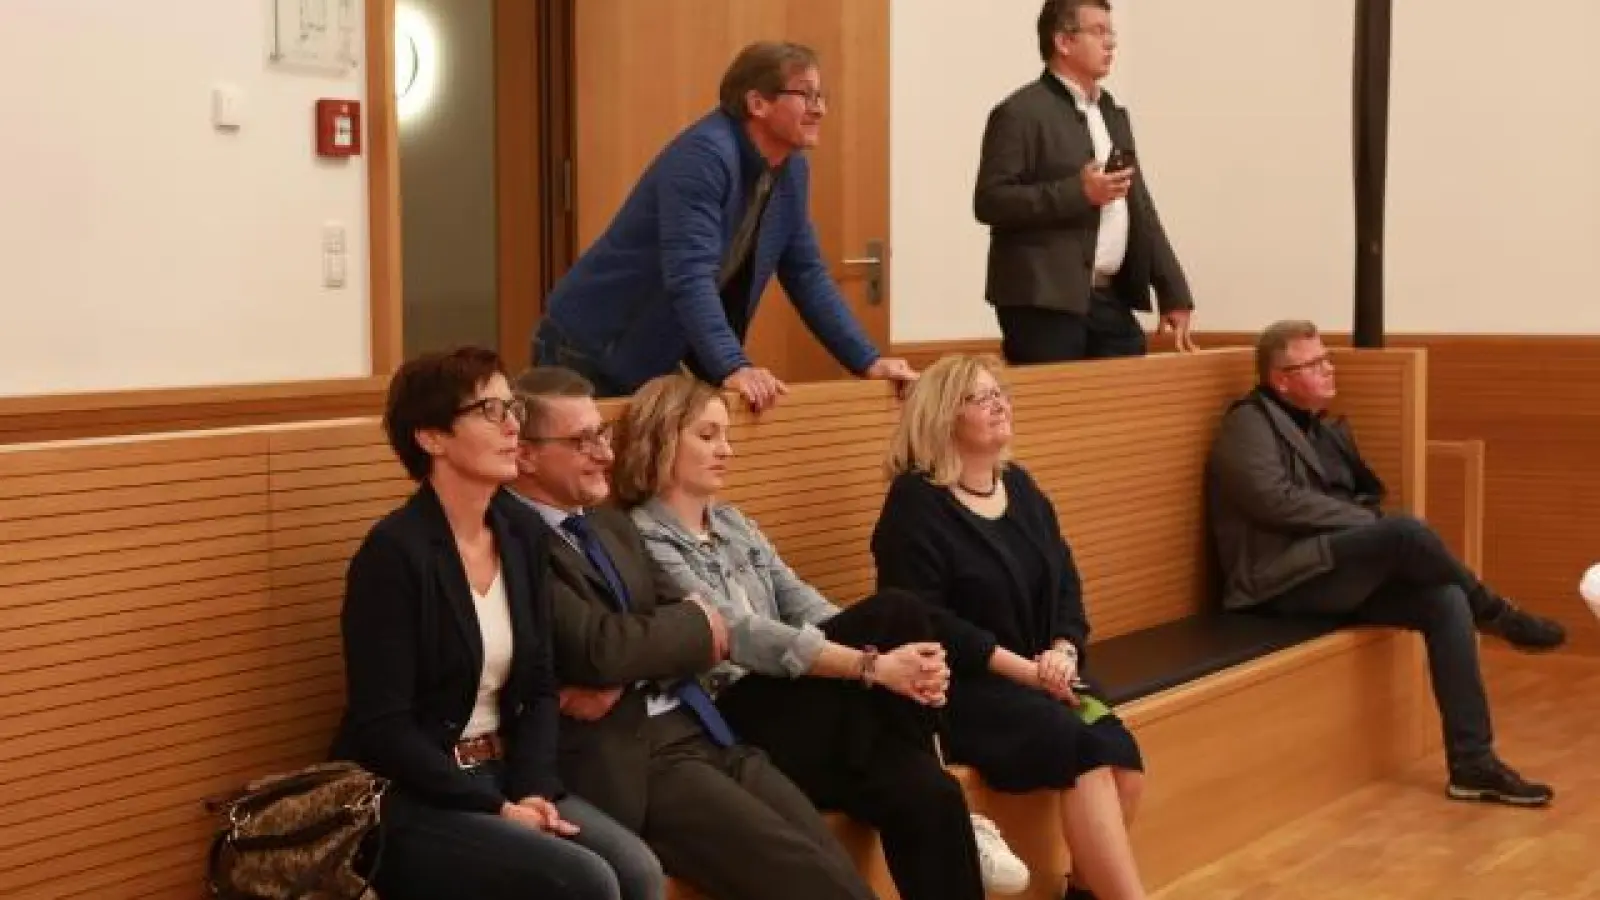 Viel war nicht los   im Pöttmeser Kultursaal, als die beiden Bürgermeisterkandidaten Manfred Graser (Bürgerblock, Zweiter von links),  Mirko Ketz (CSU, stehend, rechts) und einige Begleiter gestern nach 18 Uhr gespannt auf die Ergebnisse der Bürgermeisterwahl warteten. Nicht einmal 20 Leute waren da.